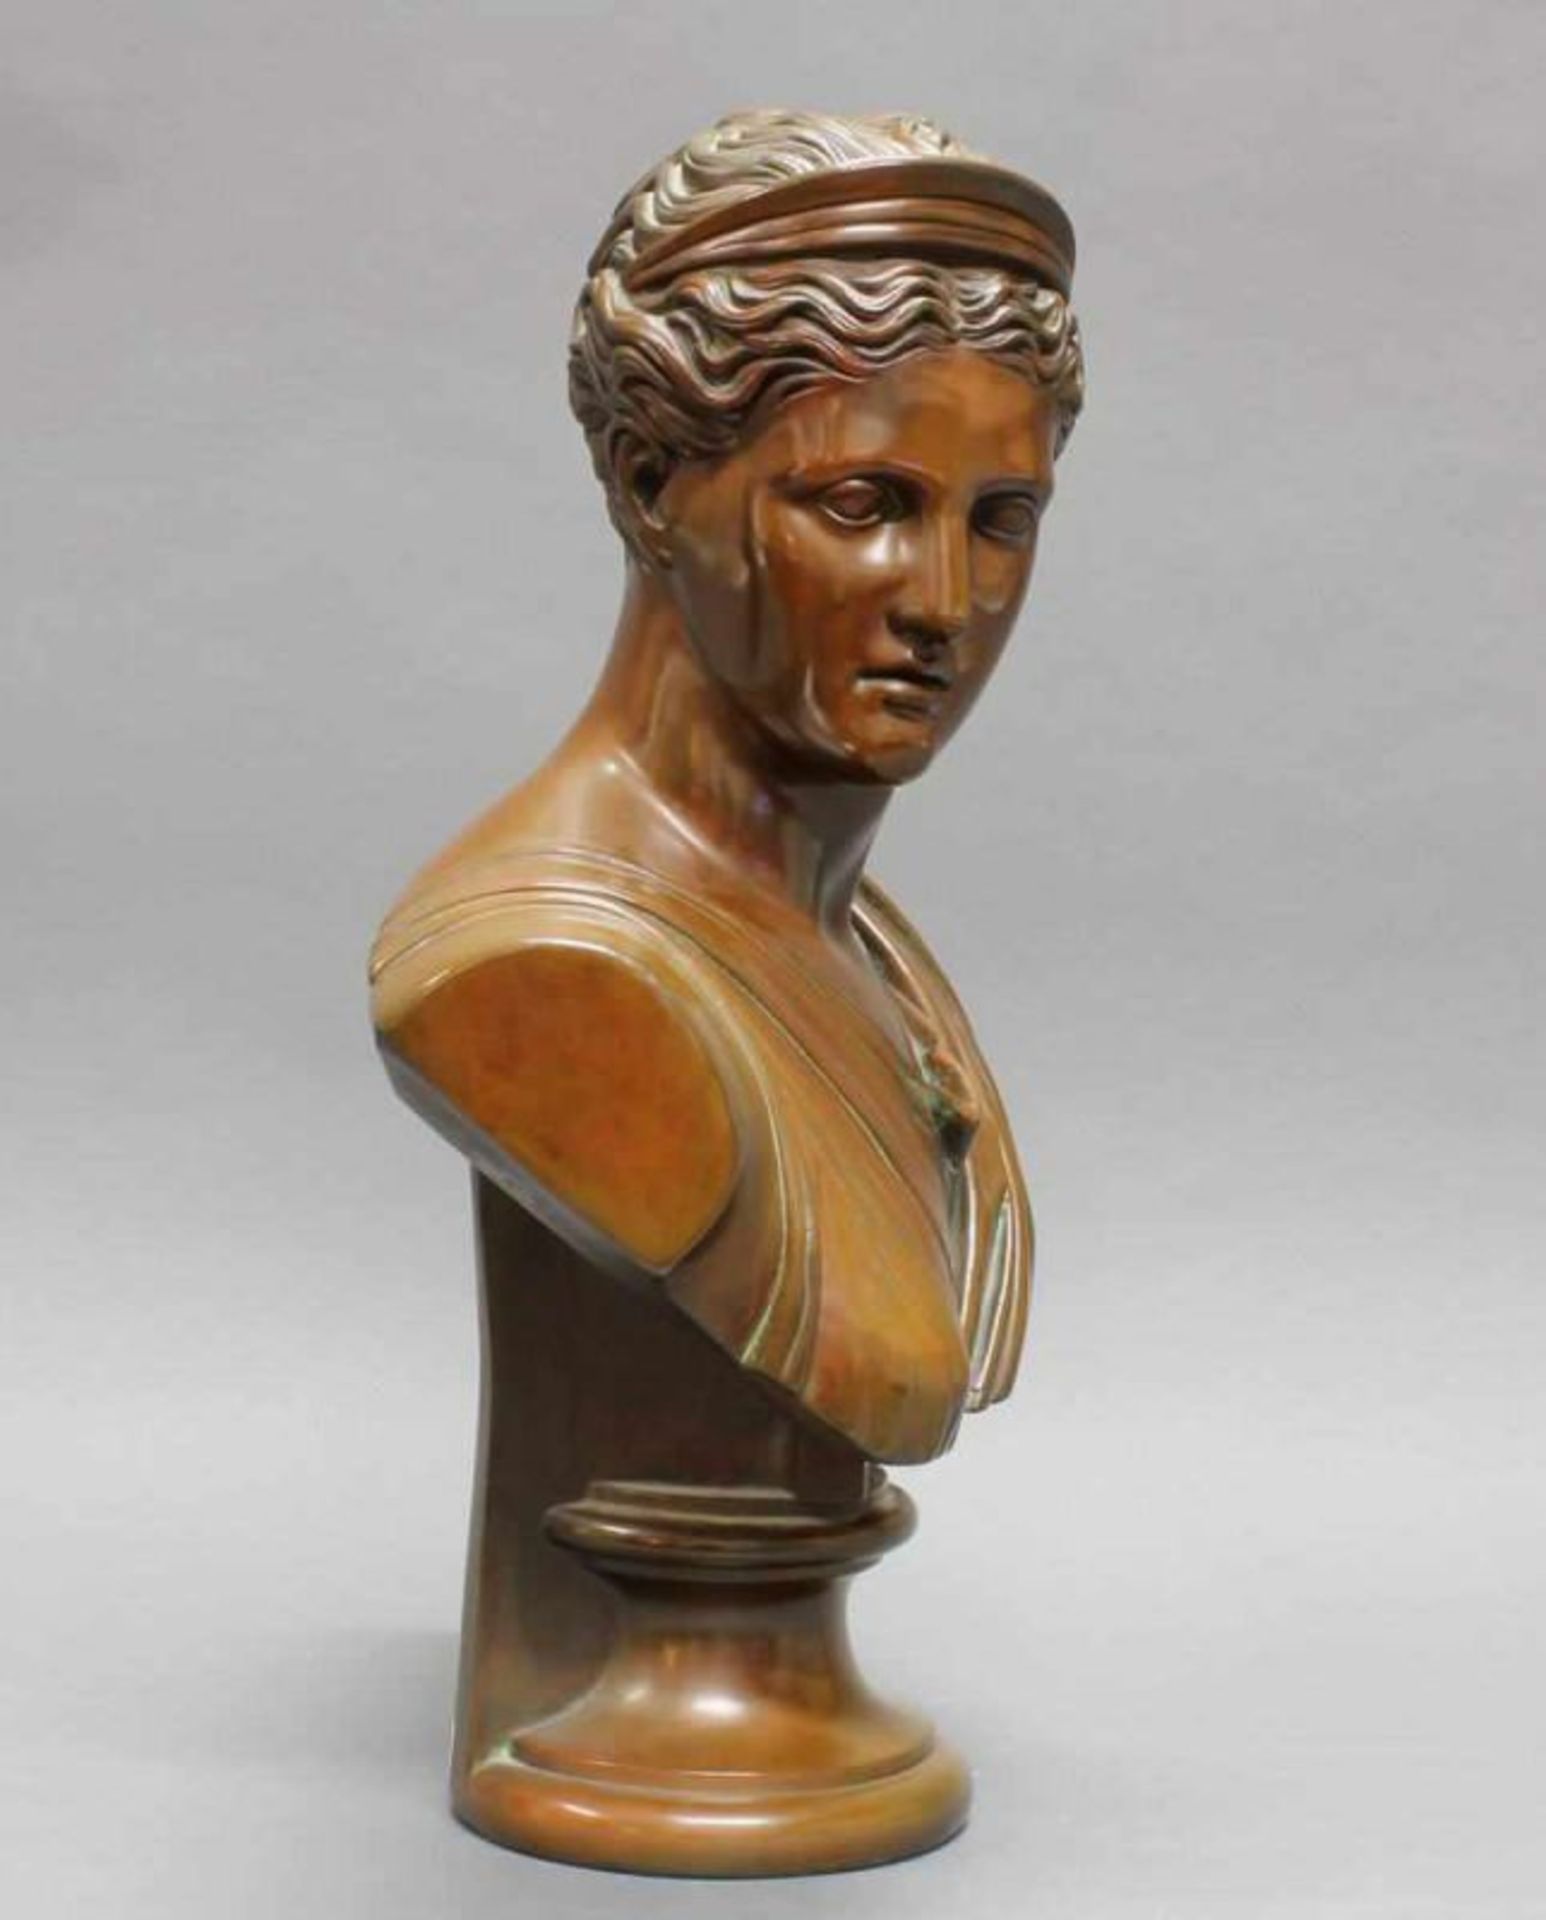 2 Terracottabüsten, bronziert, "Diana", "Apoll", nach antiken Vorbildern, 19./20. Jh., je 54 cm hoch - Image 3 of 8